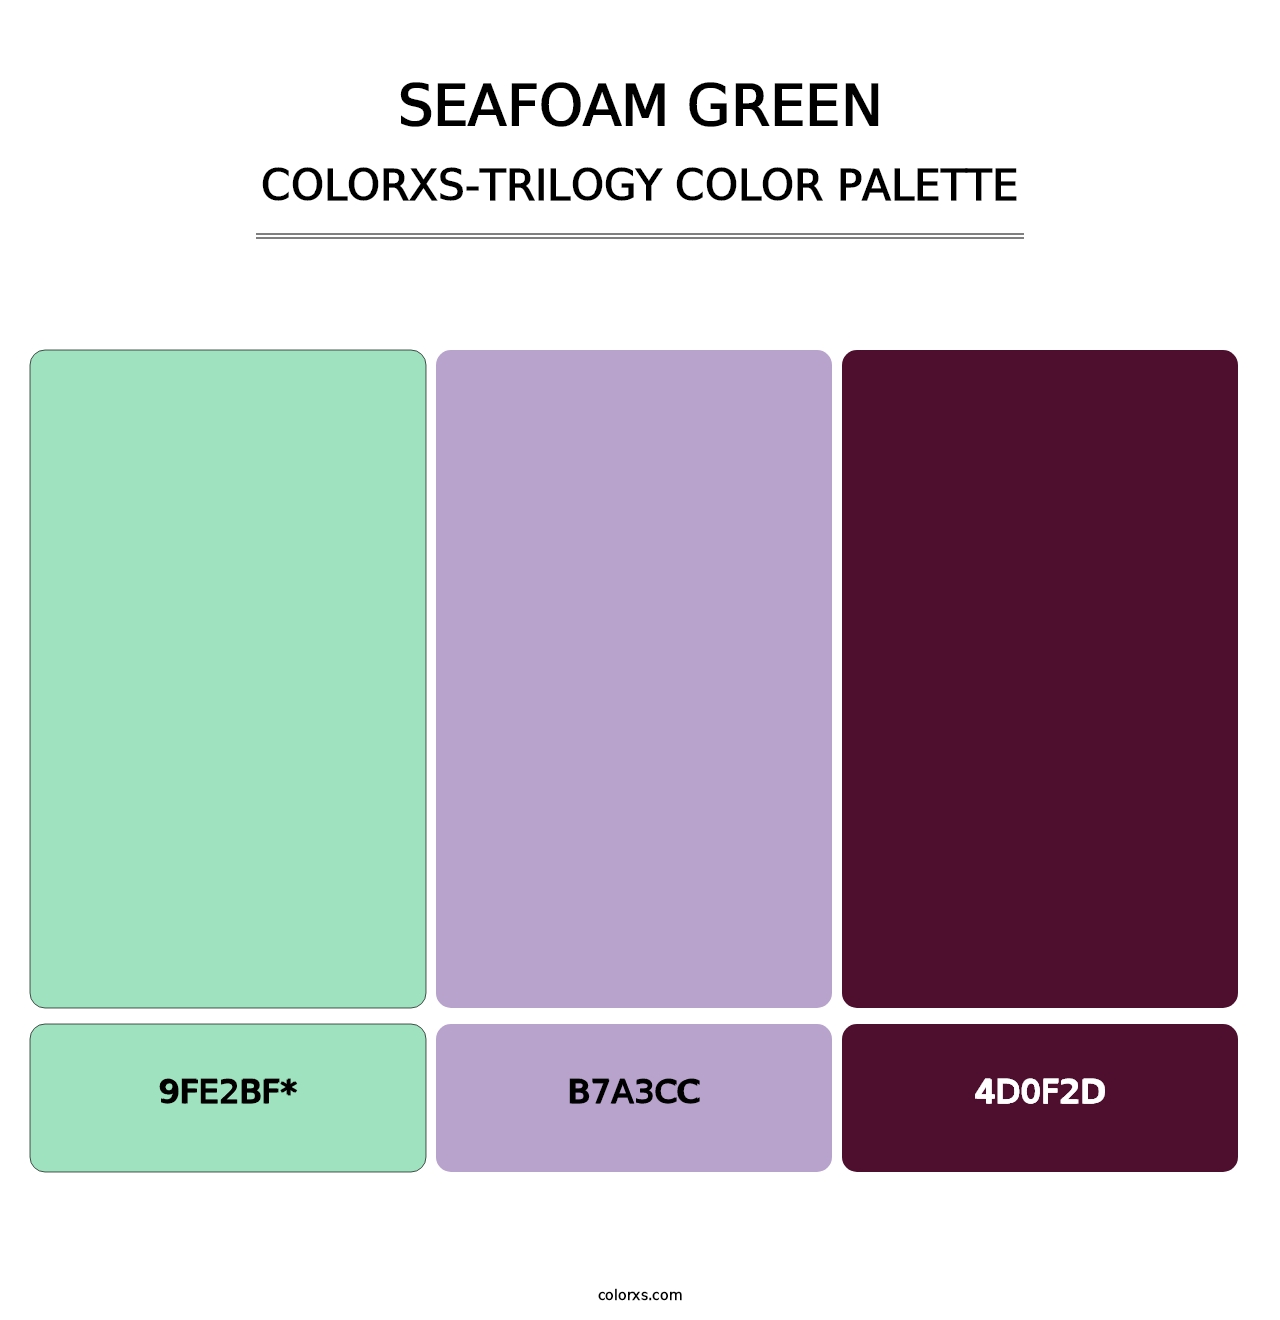 Seafoam Green - Colorxs Trilogy Palette